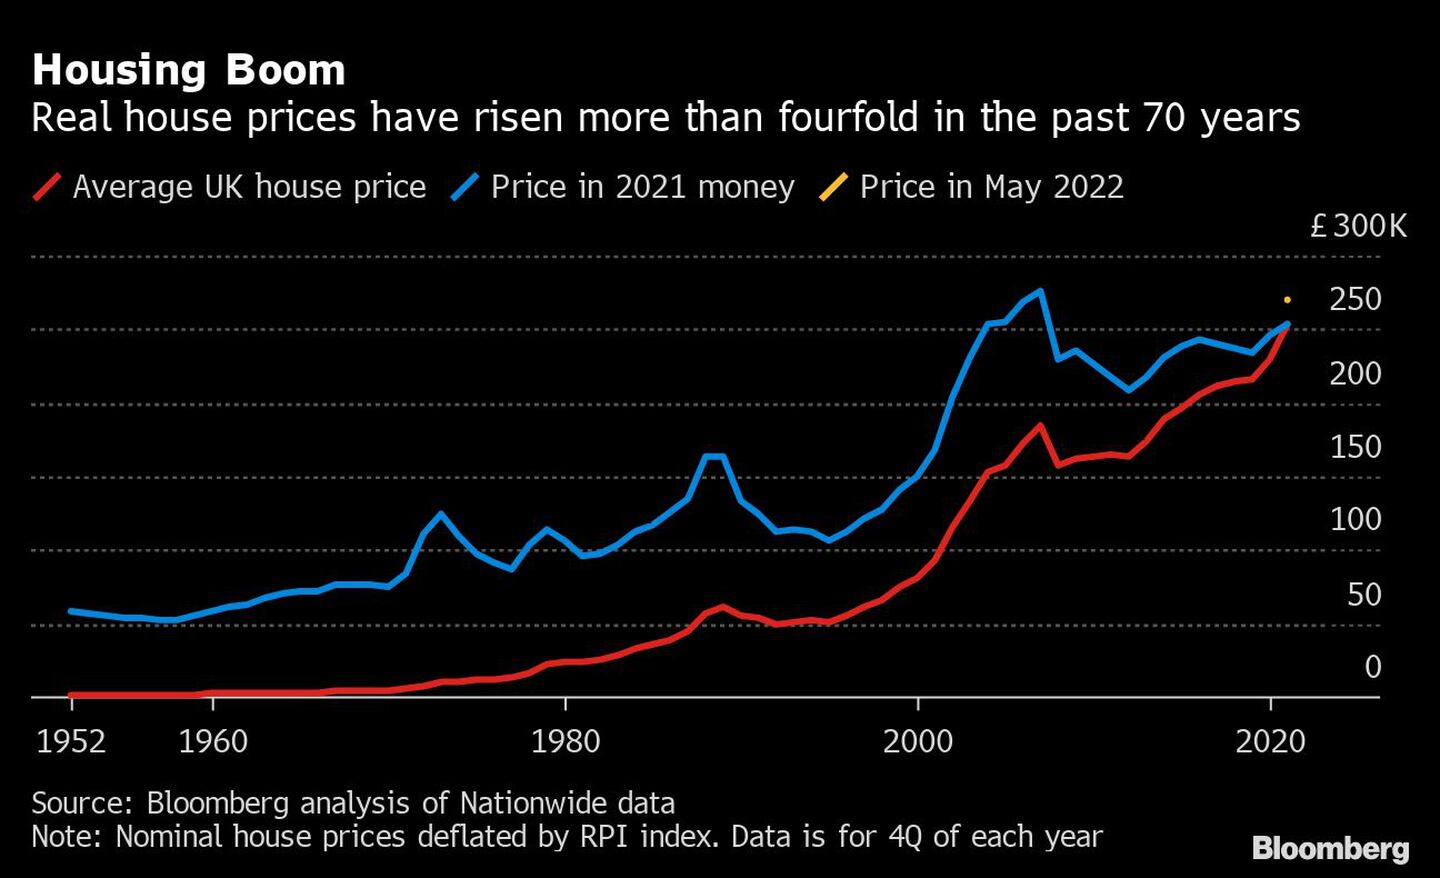 Auge de la vivienda
Los precios reales de la vivienda se han multiplicado por más de cuatro en los últimos 70 años
Rojo: Precio medio de la vivienda en el Reino Unido, azul: precio en dinero de 2021, naranja: Precio en mayo de 2022dfd